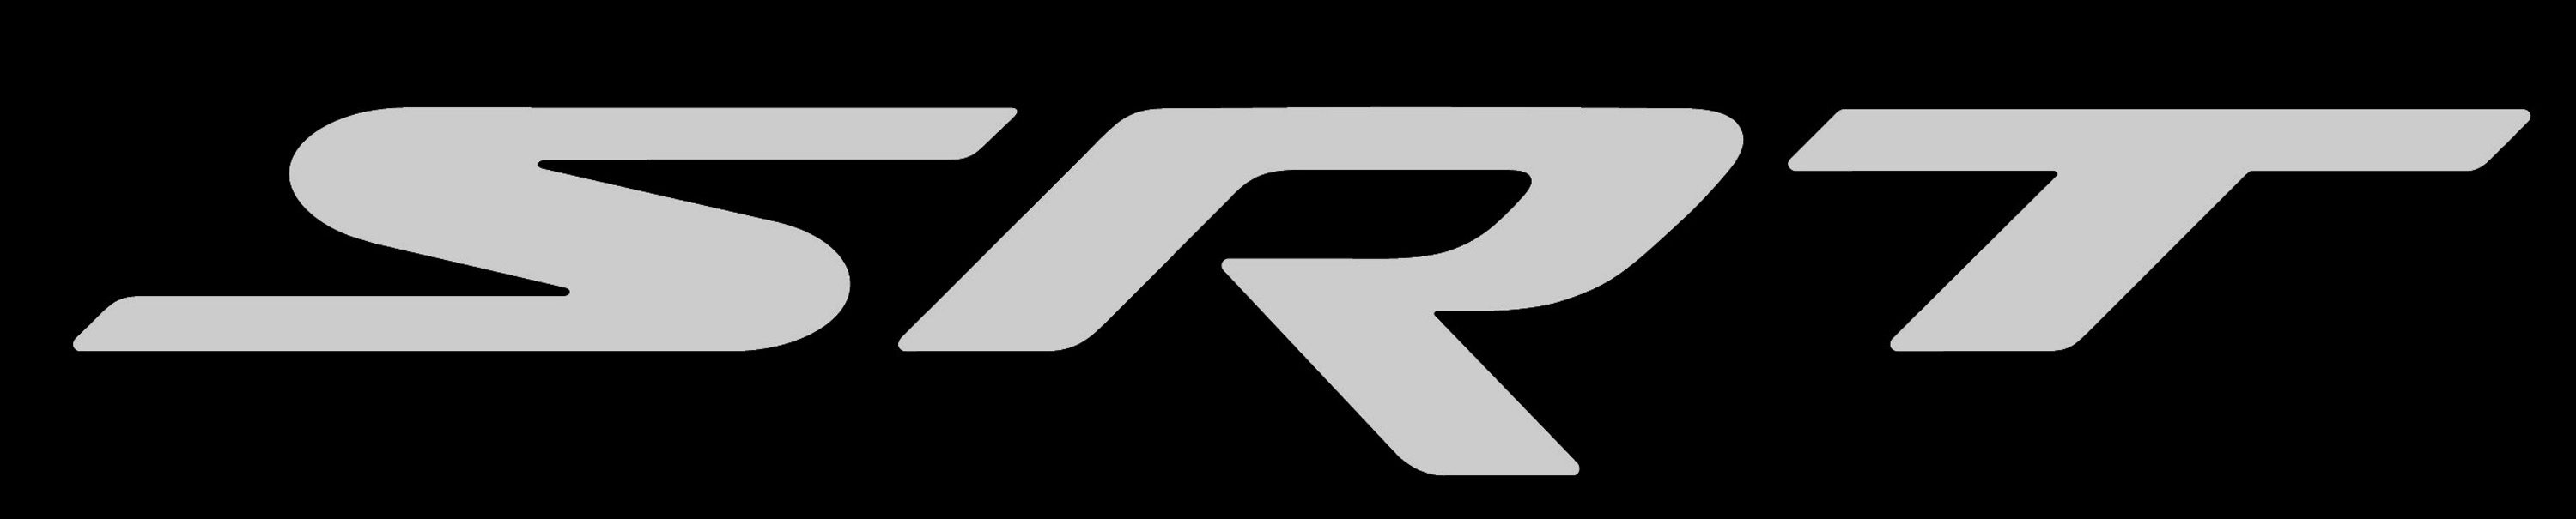 SRT_Logo_Gray_on_Black.jpg